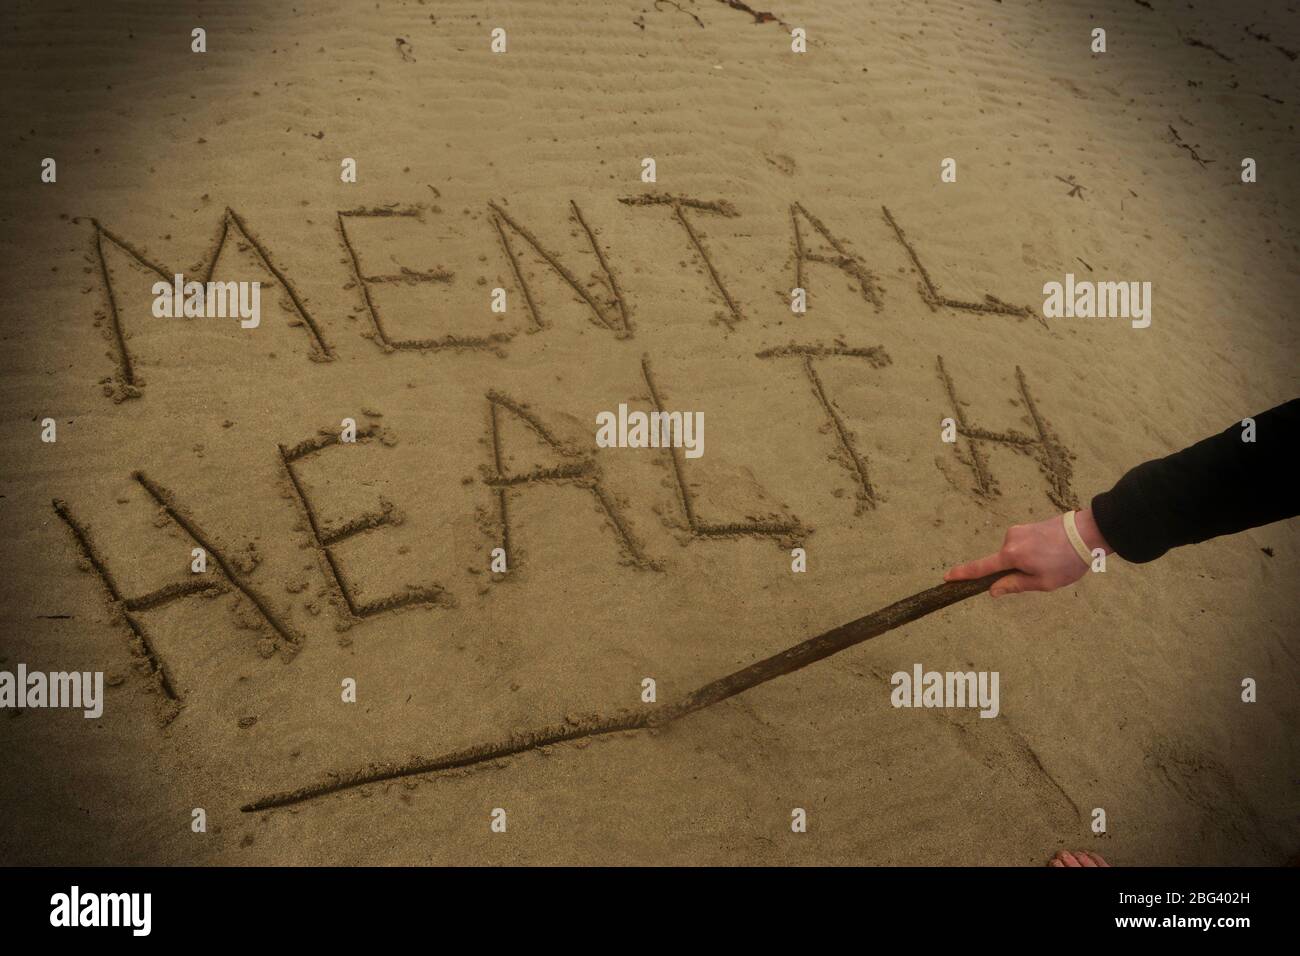 Un giovane che soffre di depressione scrive le parole salute mentale nella sabbia Foto Stock